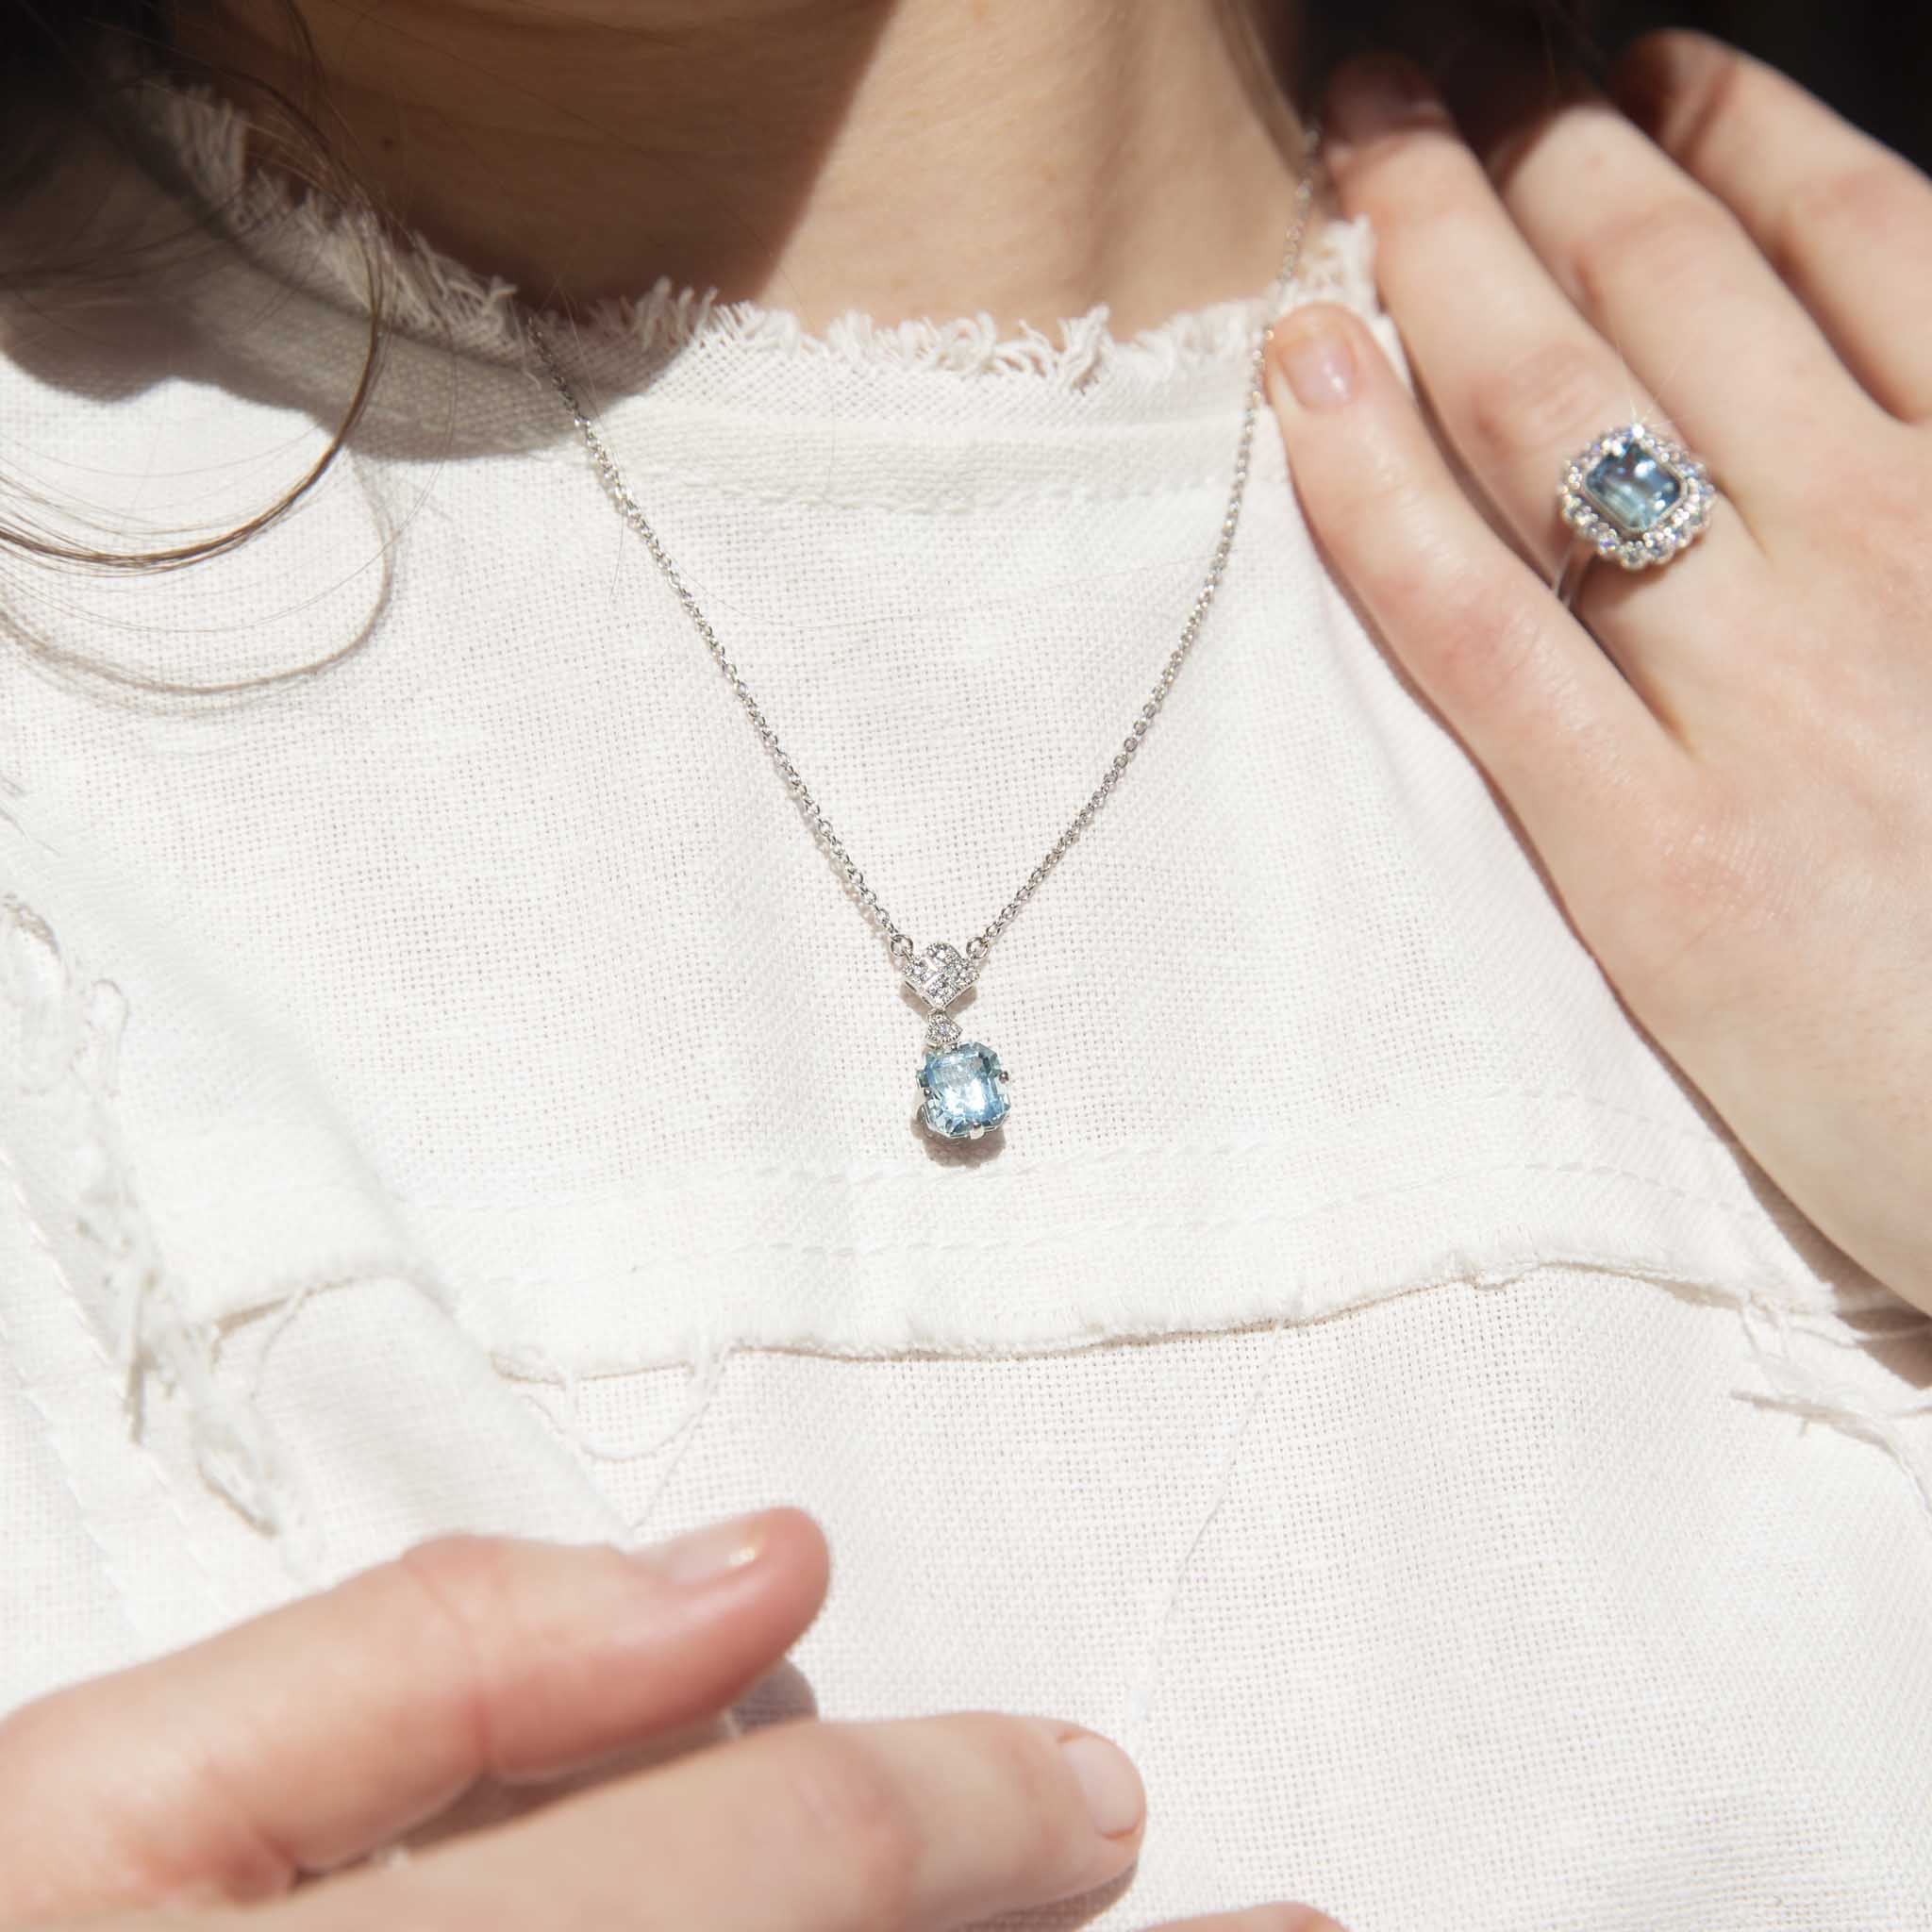 Nilima 2.61 Carat Aquamarine & Diamond Platinum Ring Rings Imperial Jewellery 